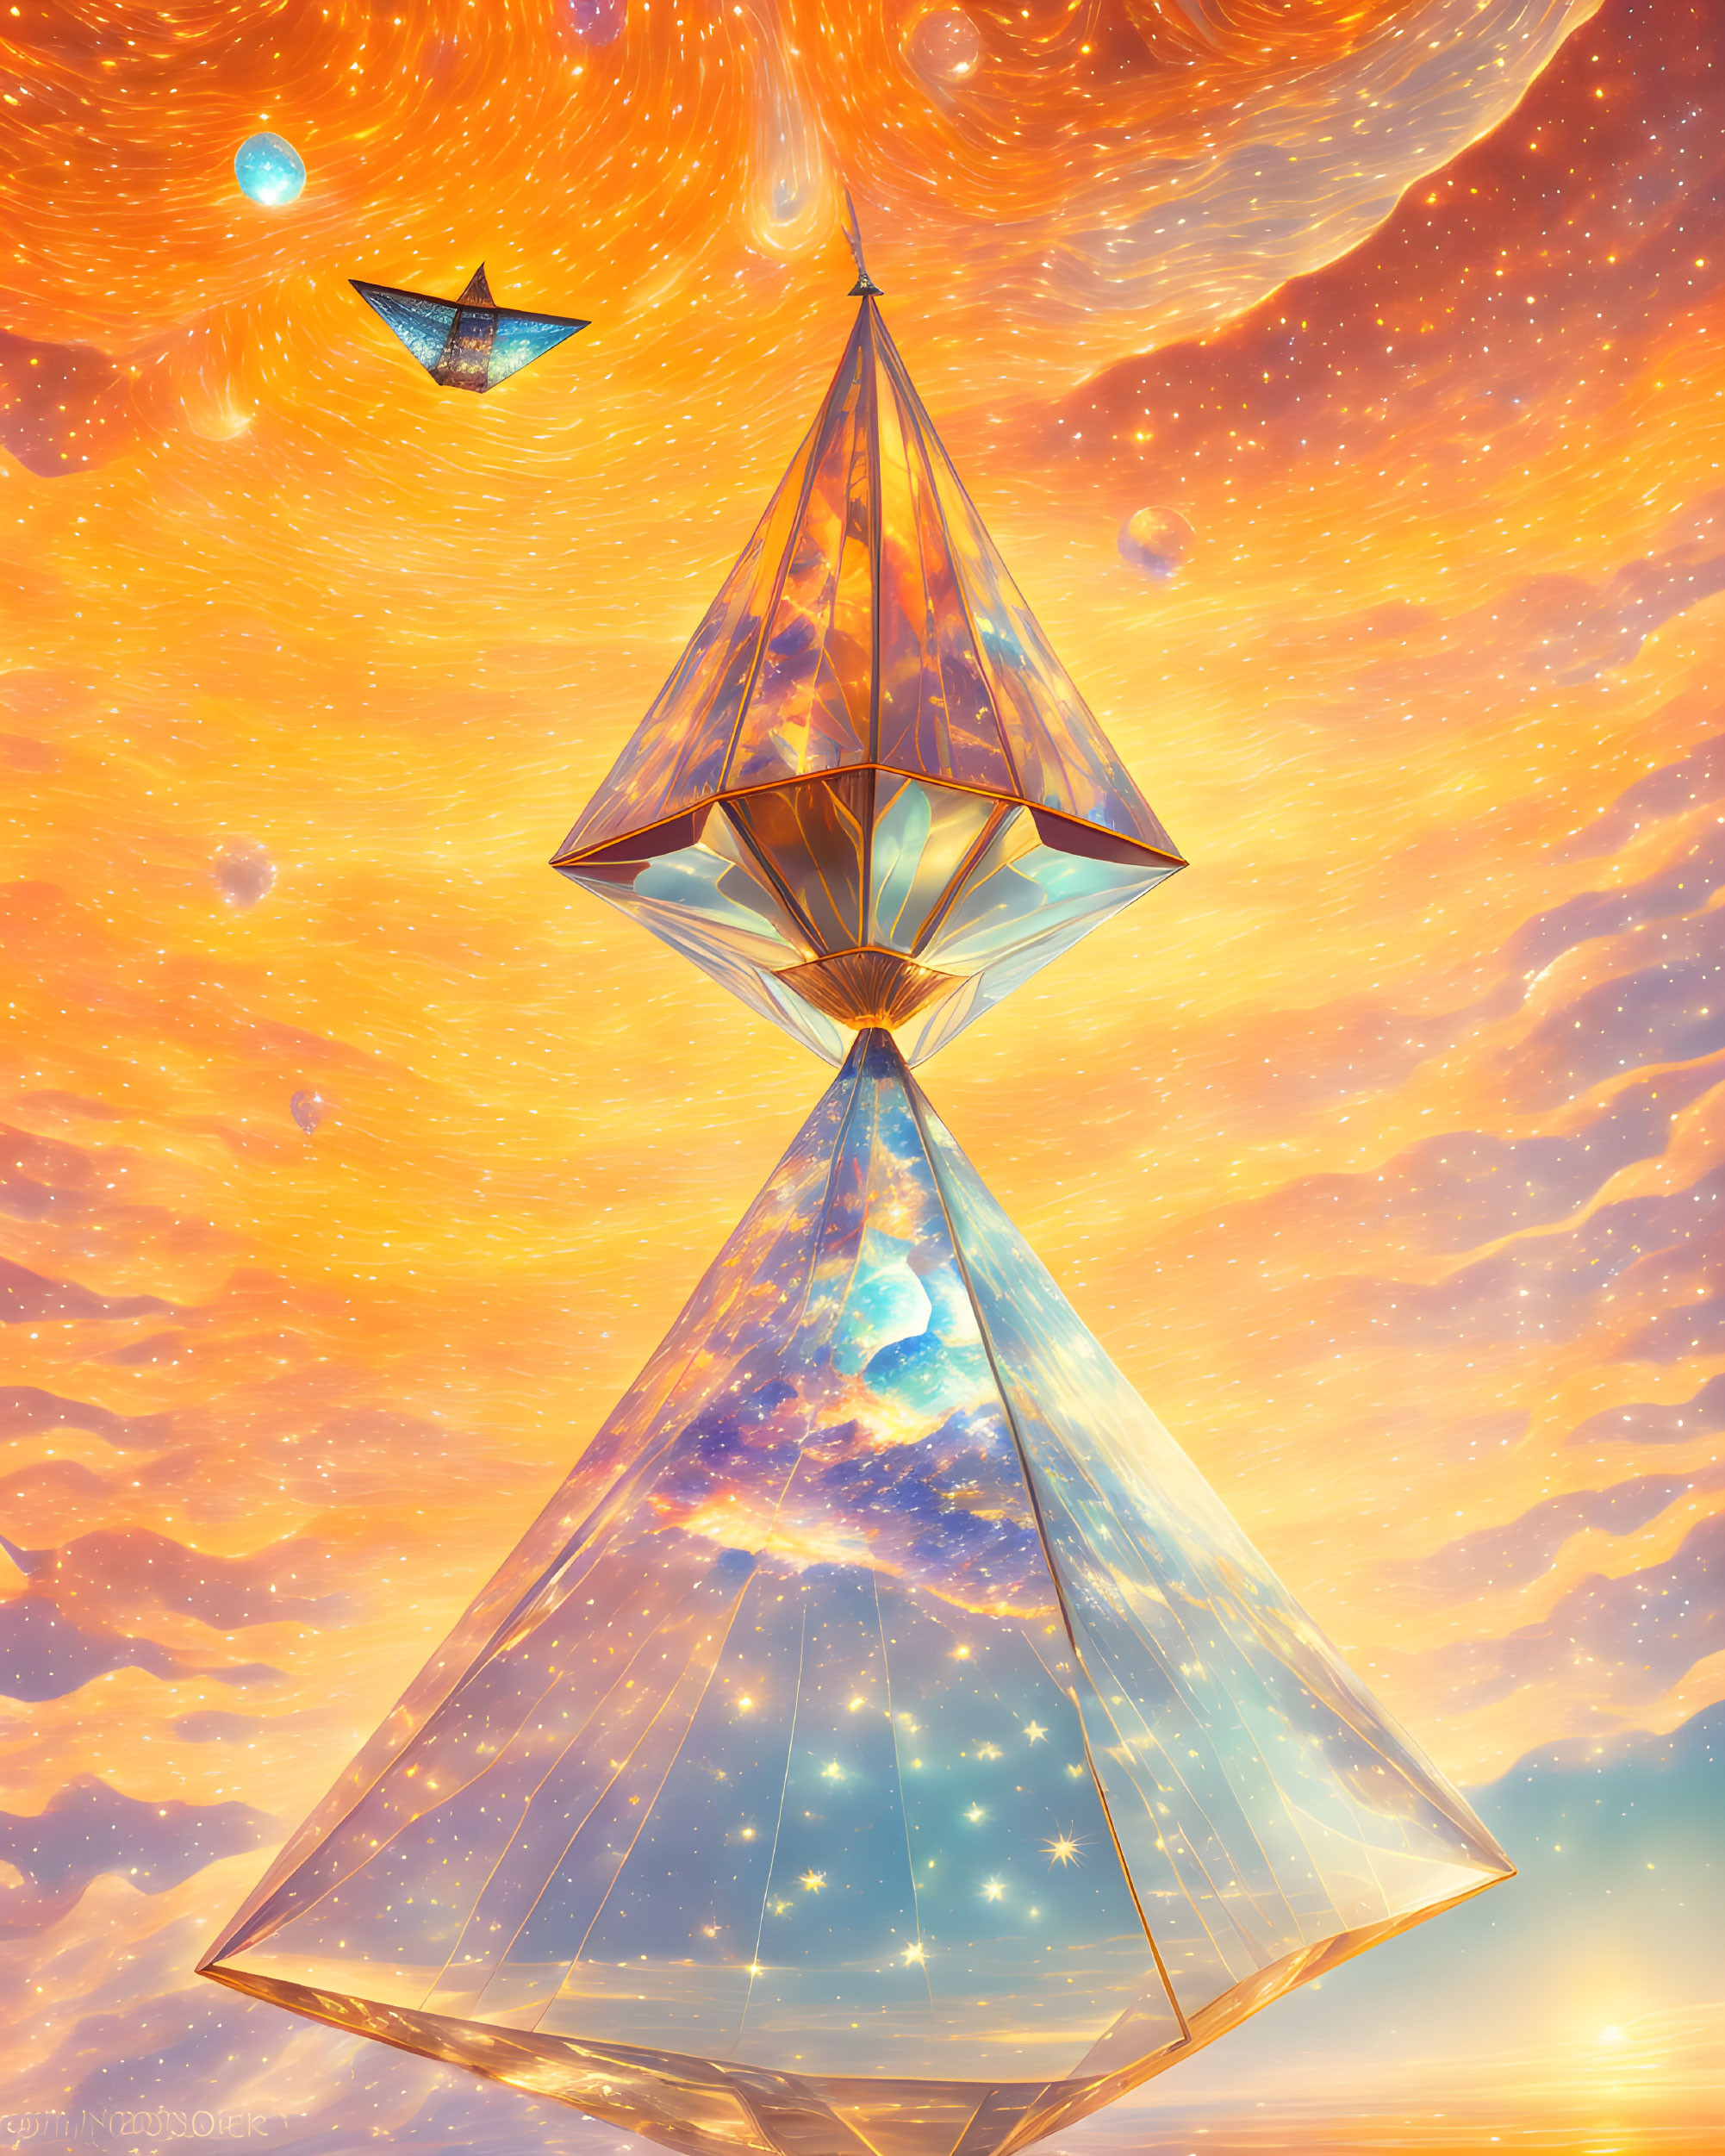 Crystal Cosmos: A Digital Masterpiece